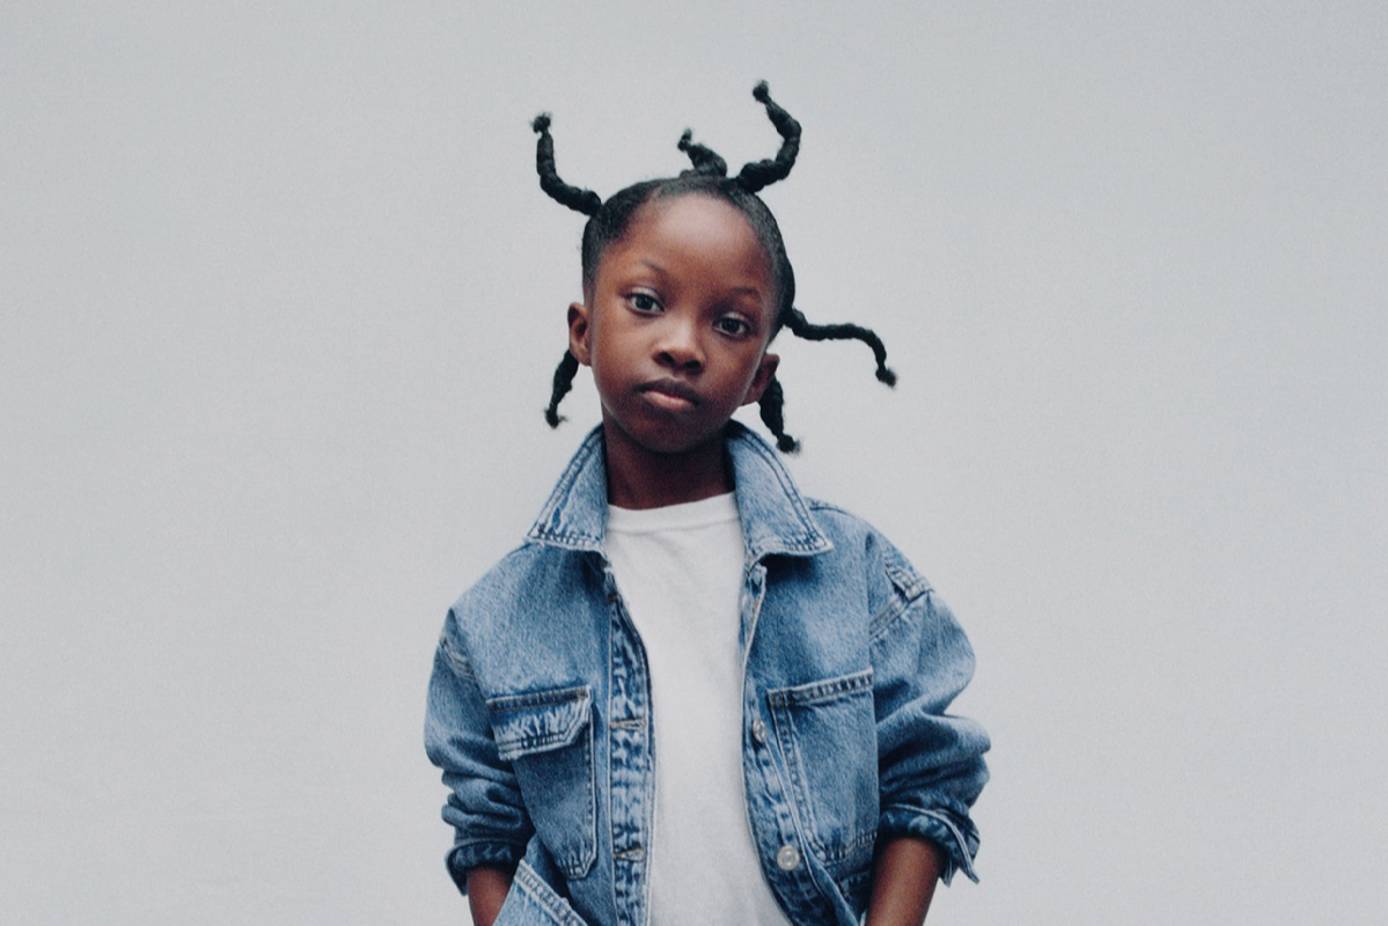 Zara crece en circularidad con cápsula infantil “The Jeans Redesign”